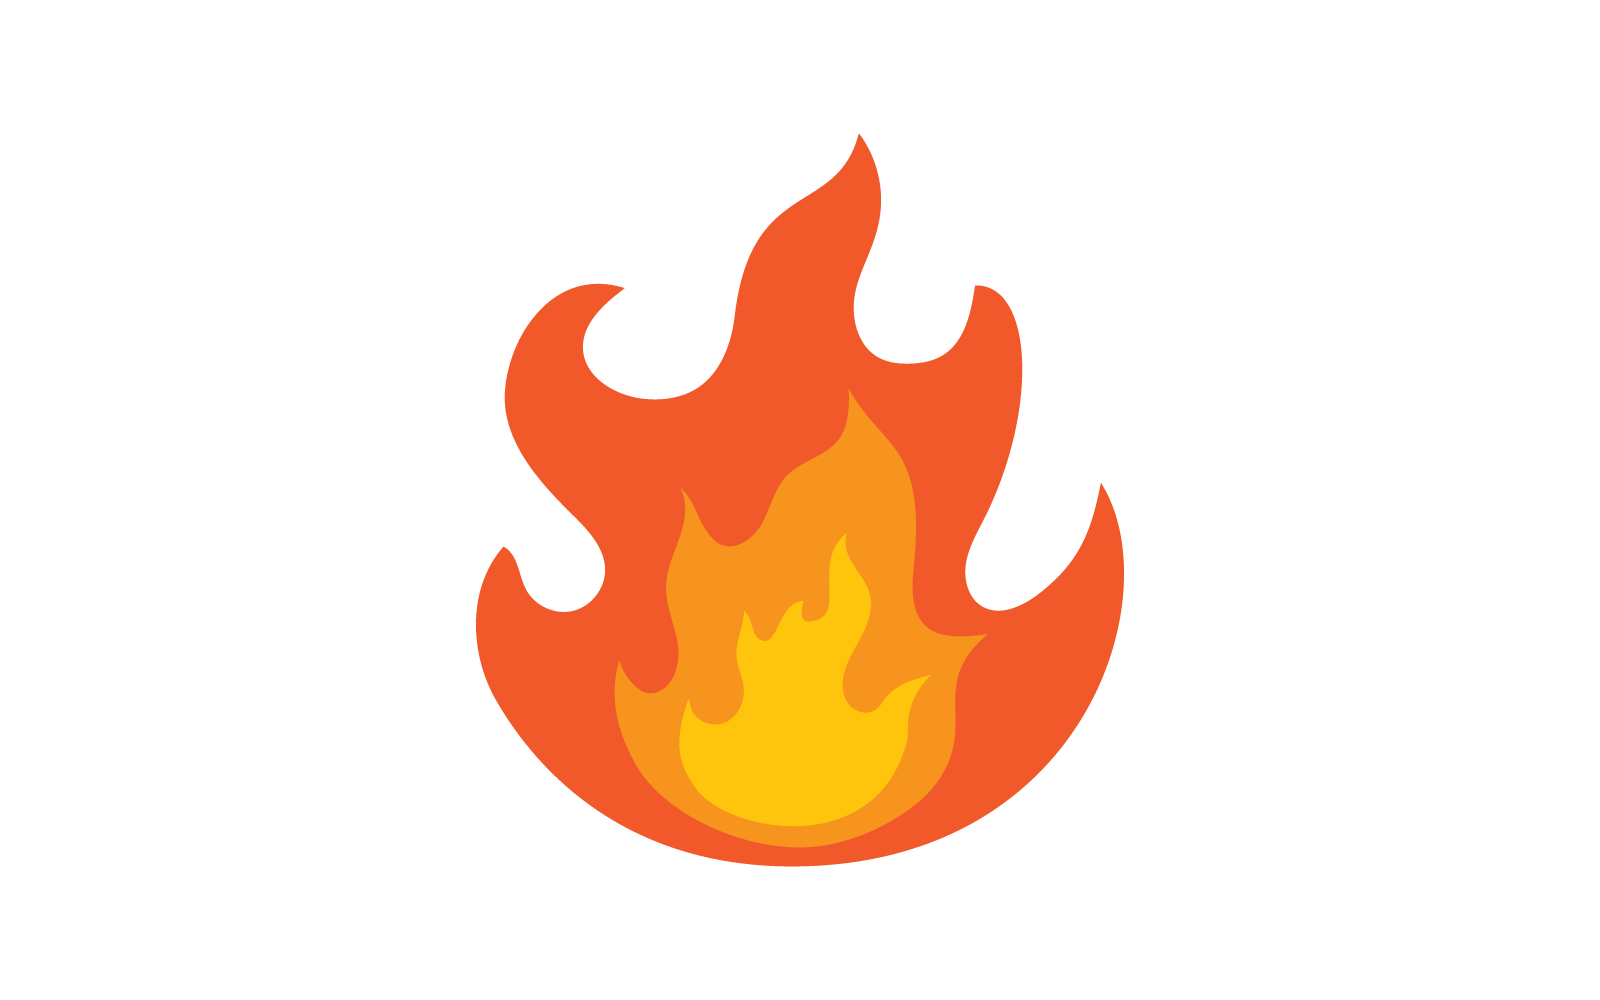 Fire flame Logo, Oil, gas and energy logo vector concept